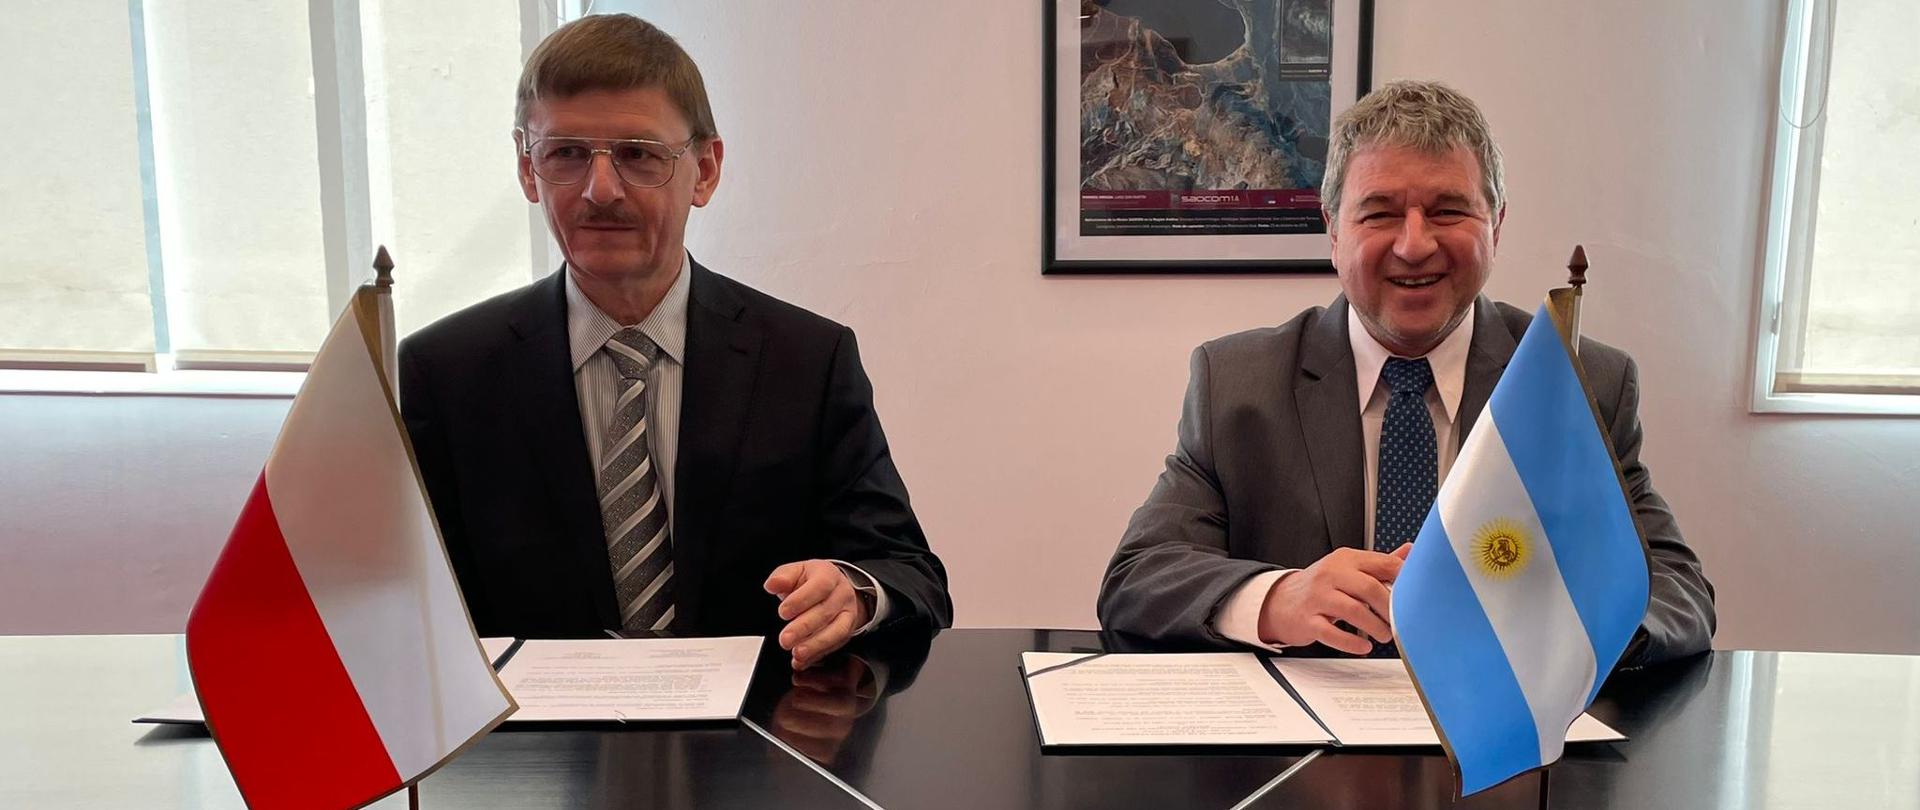 Prezes Polsy Grzegorz Wrochna i przedstawiciel argentyńskiej agencji kosmicznej siedzą przy stole i podpisują porozumienie o współpracy.